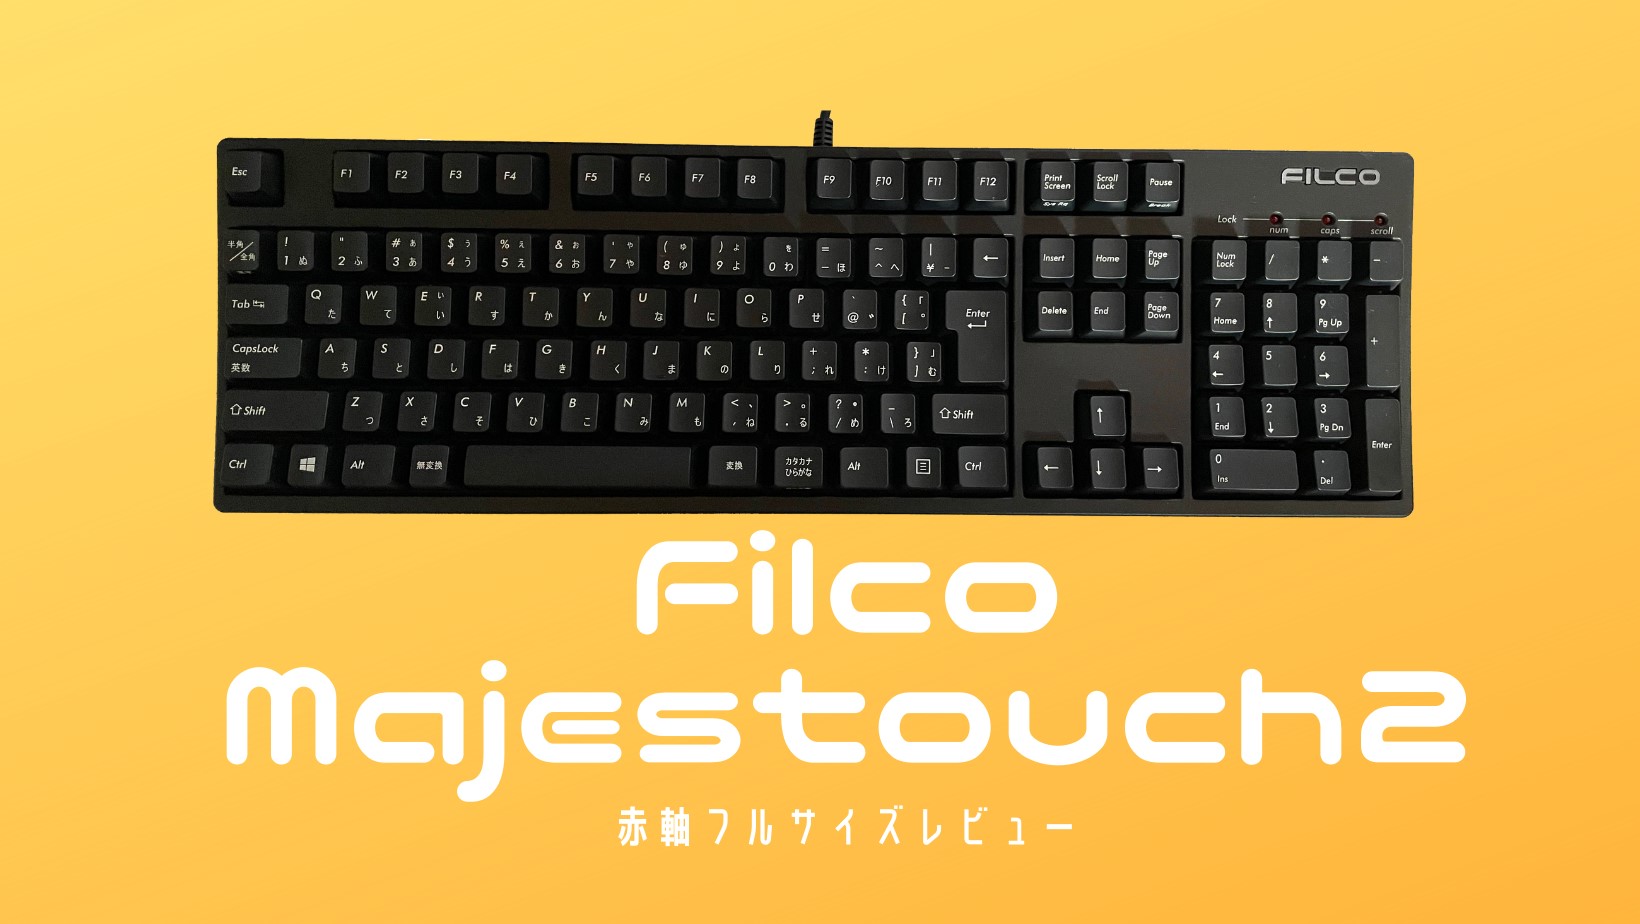 Filco Majestouch2 レビュー:赤軸フルサイズキーボードを使用してみた 